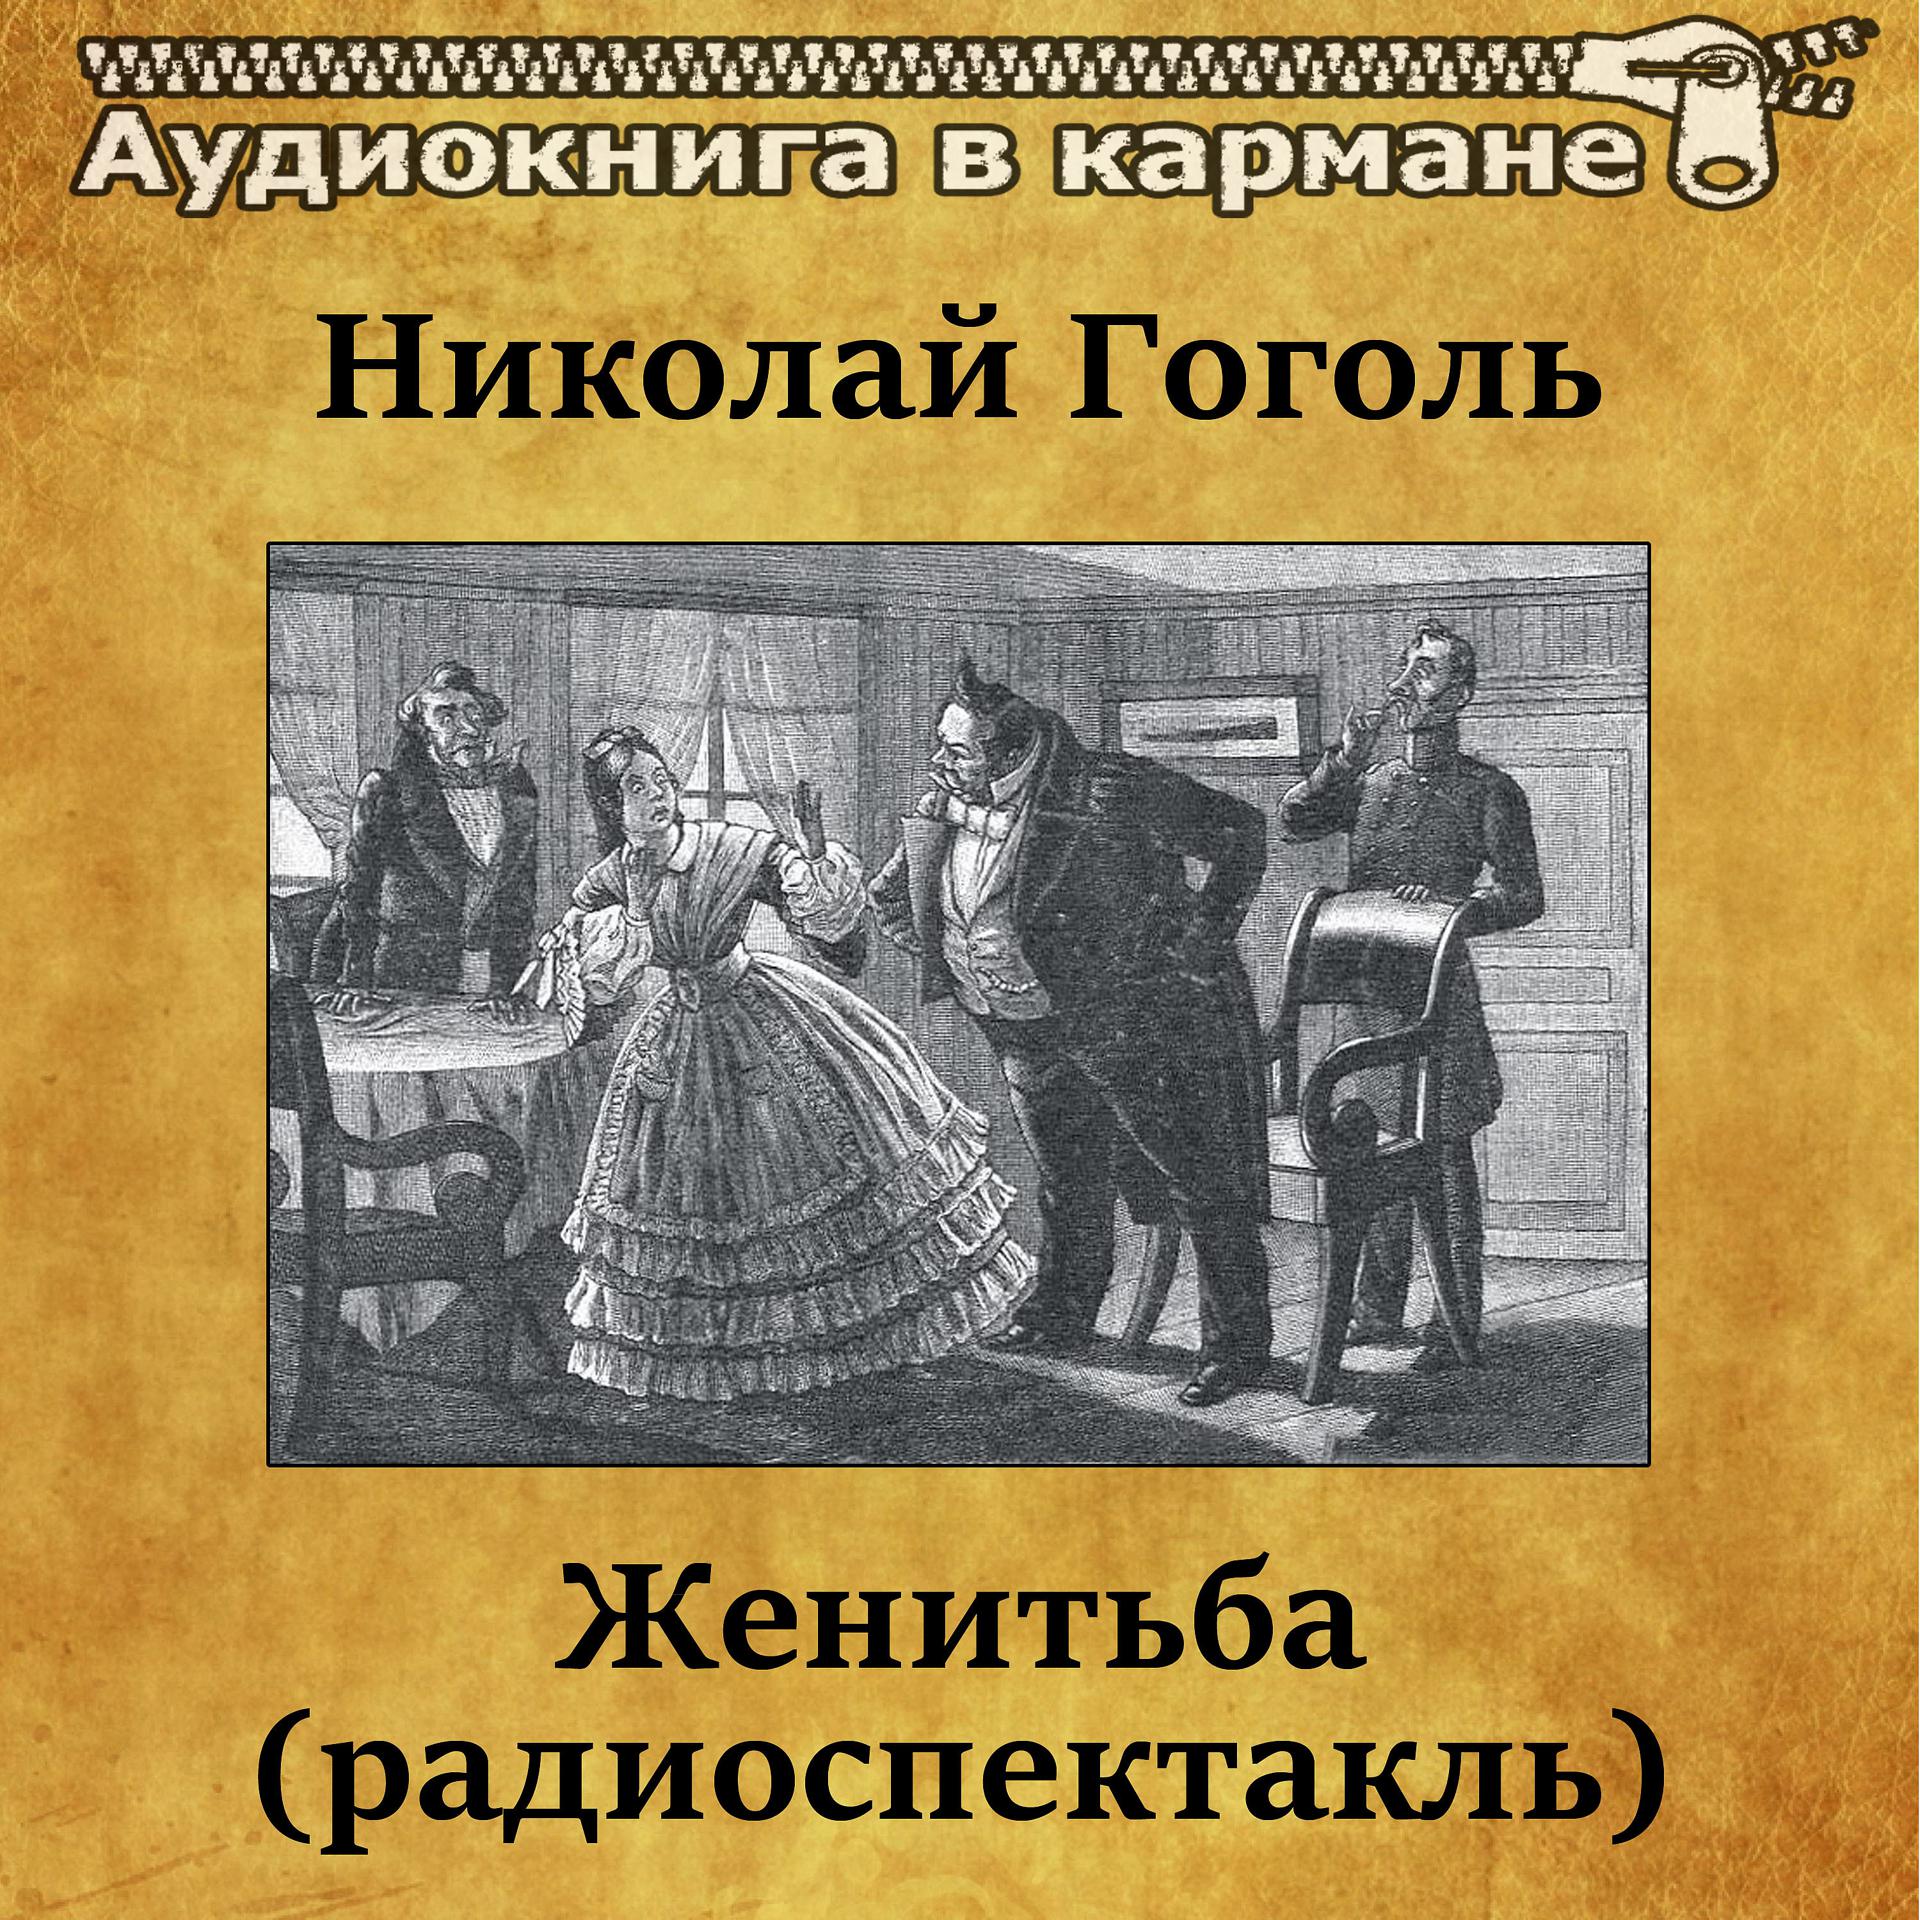 Постер к треку Аудиокнига в кармане, Лев Дуров - Женитьба, Чт. 1